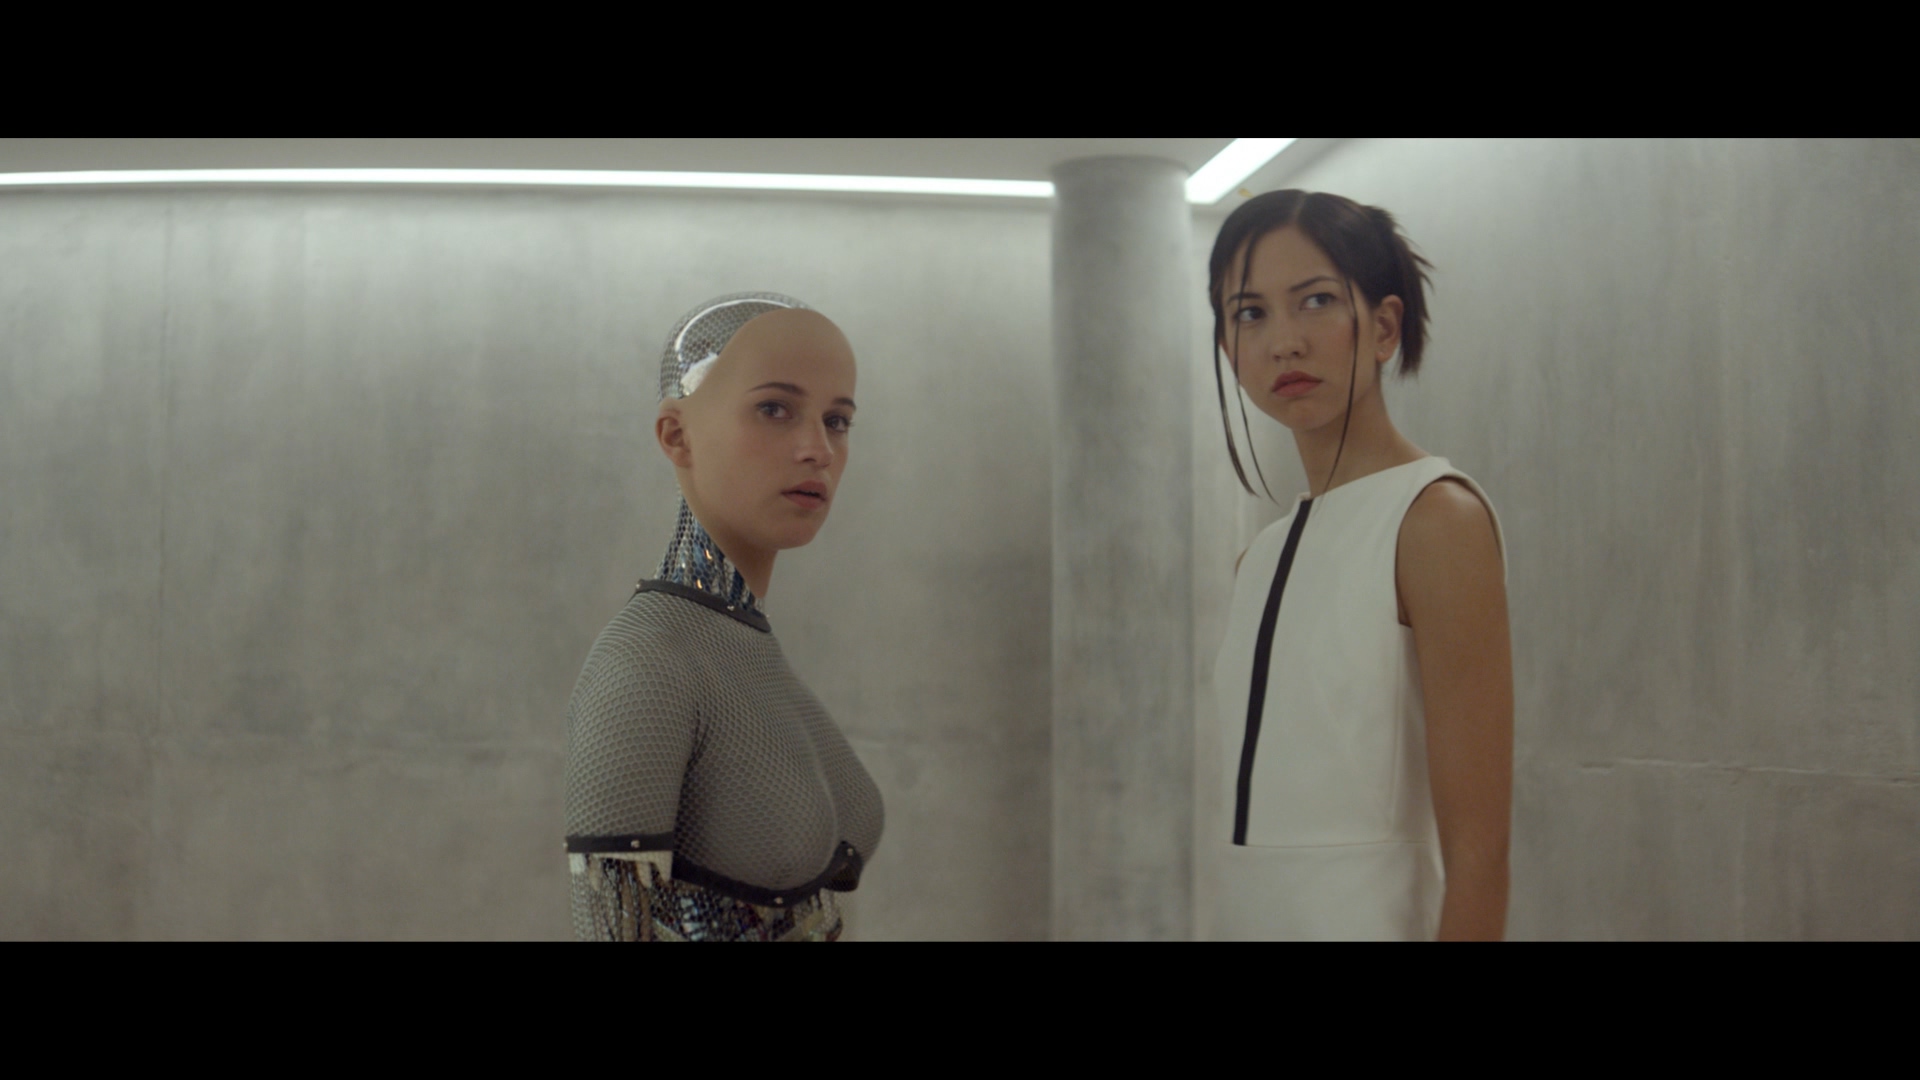 《阿丽塔》看完不过瘾?这5部"女机器人电影"都是必看神作